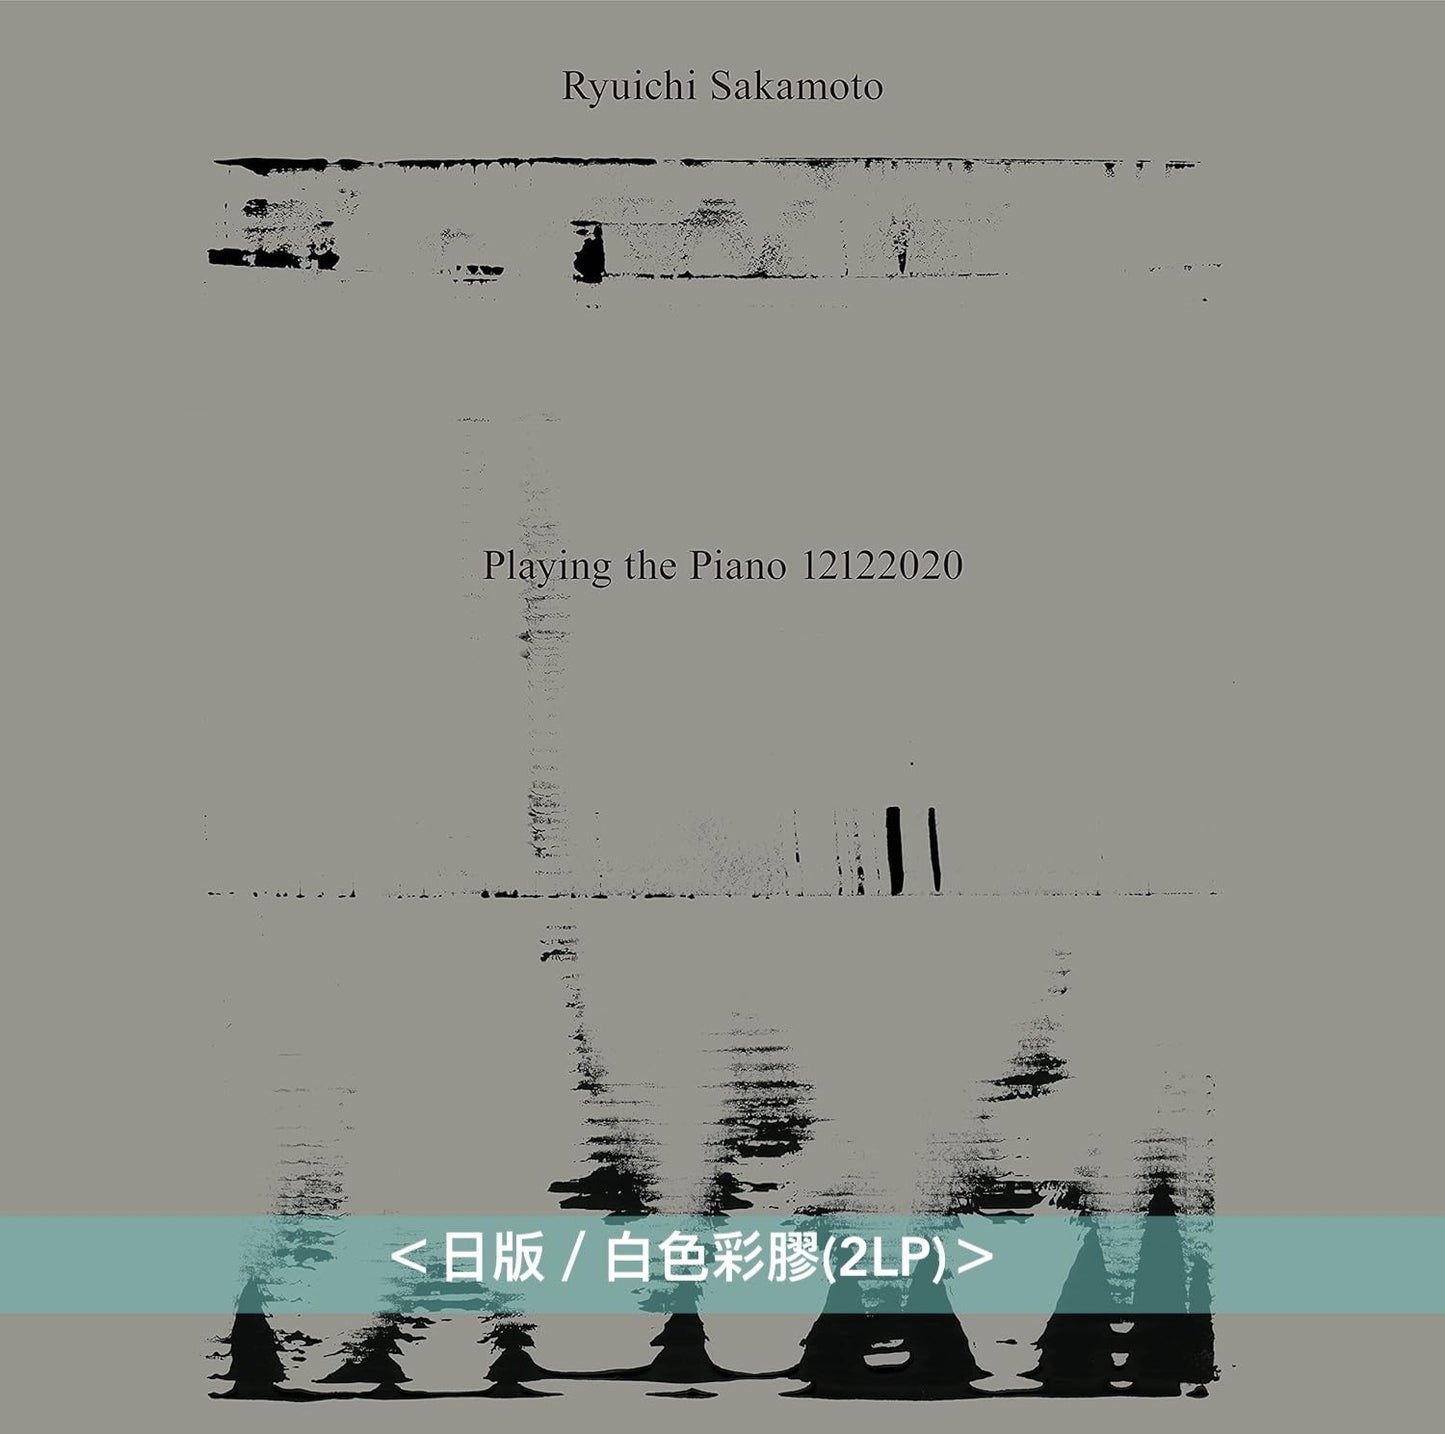 坂本龍一 日版黑膠再版Vinyl Collection Vol.2 - 無觀眾線上鋼琴獨奏音樂會《Ryuichi Sakamoto: Playing the Piano 12122020》＜日版／白色彩膠(2LP)＞